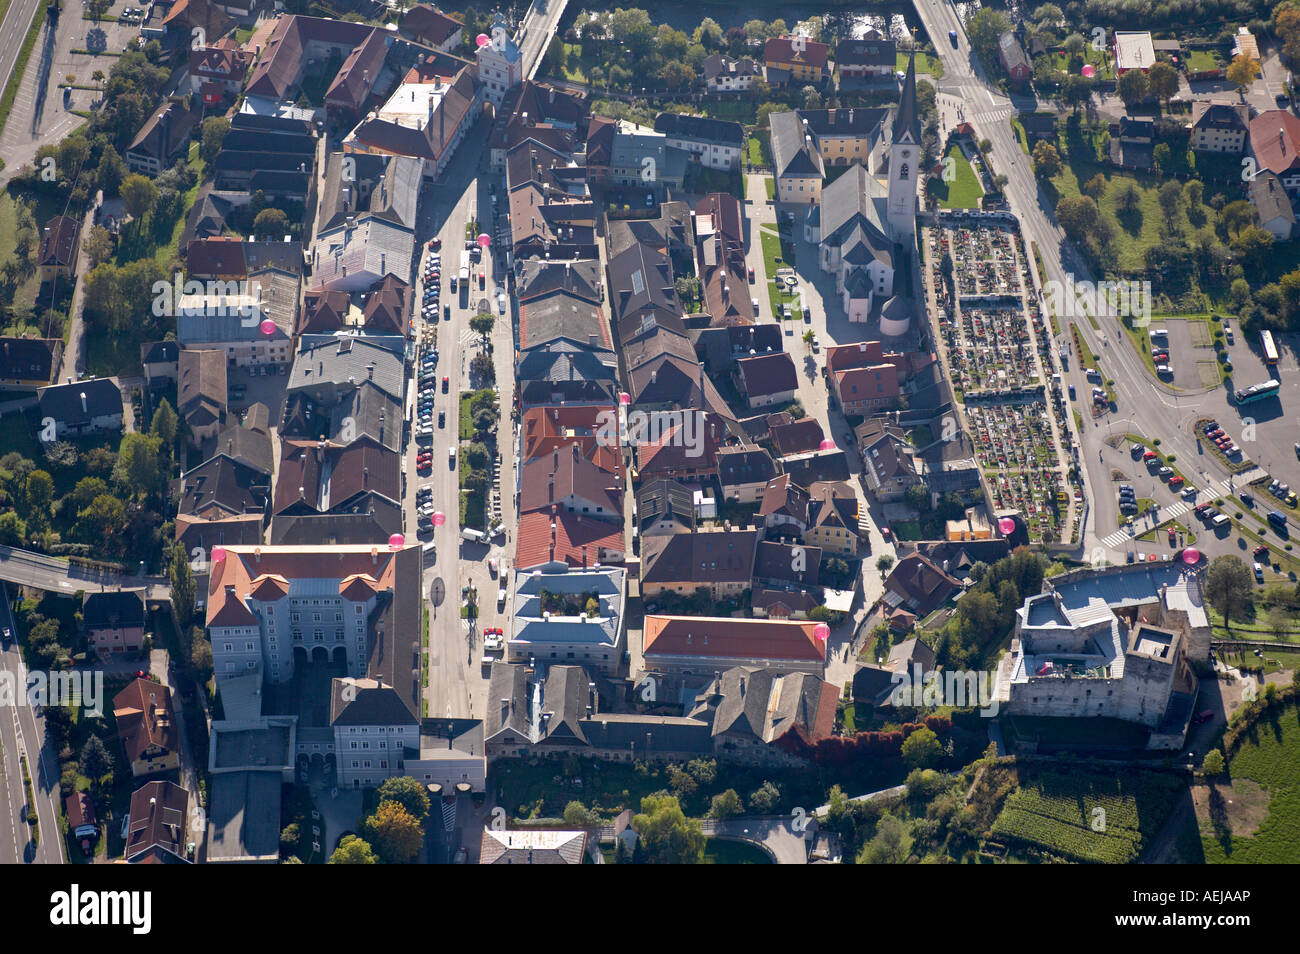 Little Tauern town Gmuend/Carinthia, aerial view, Carinthia, Austria Stock Photo